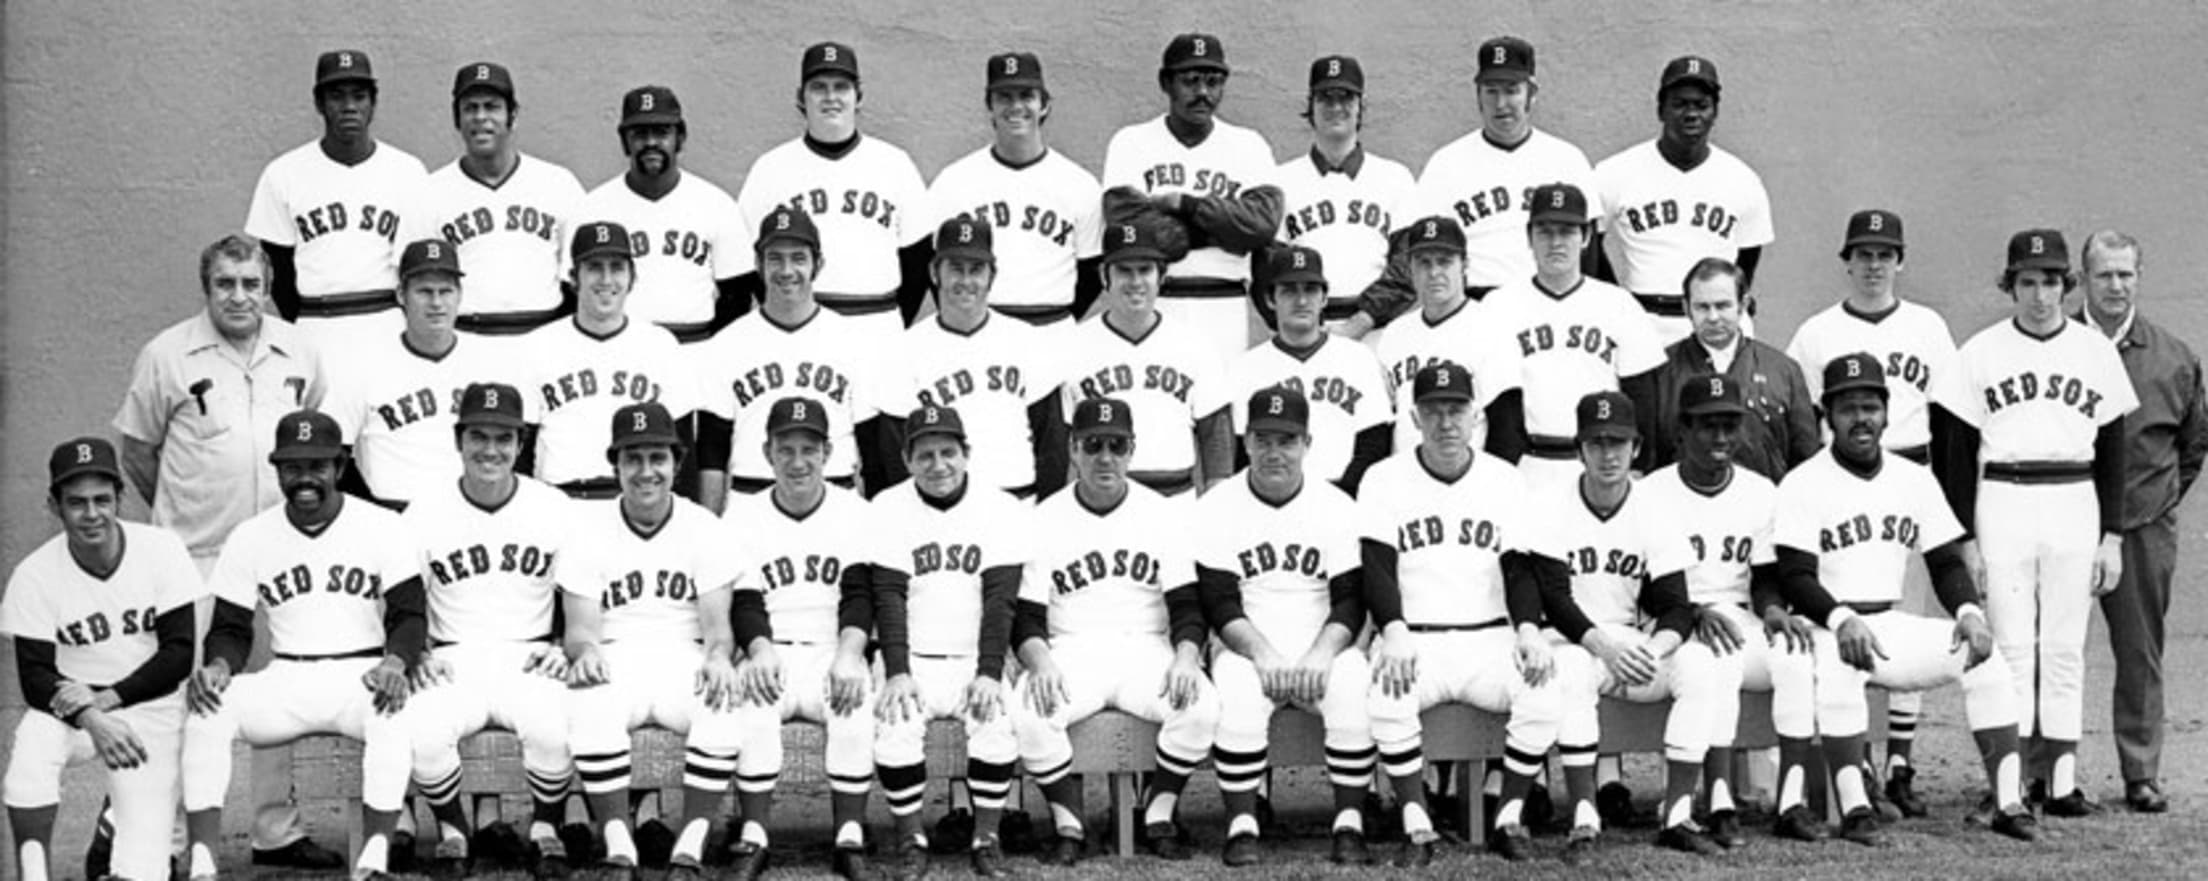 1975 Boston Red Sox Program Tony Conigliaro Photo Ex Second Edition Vs  Detroit